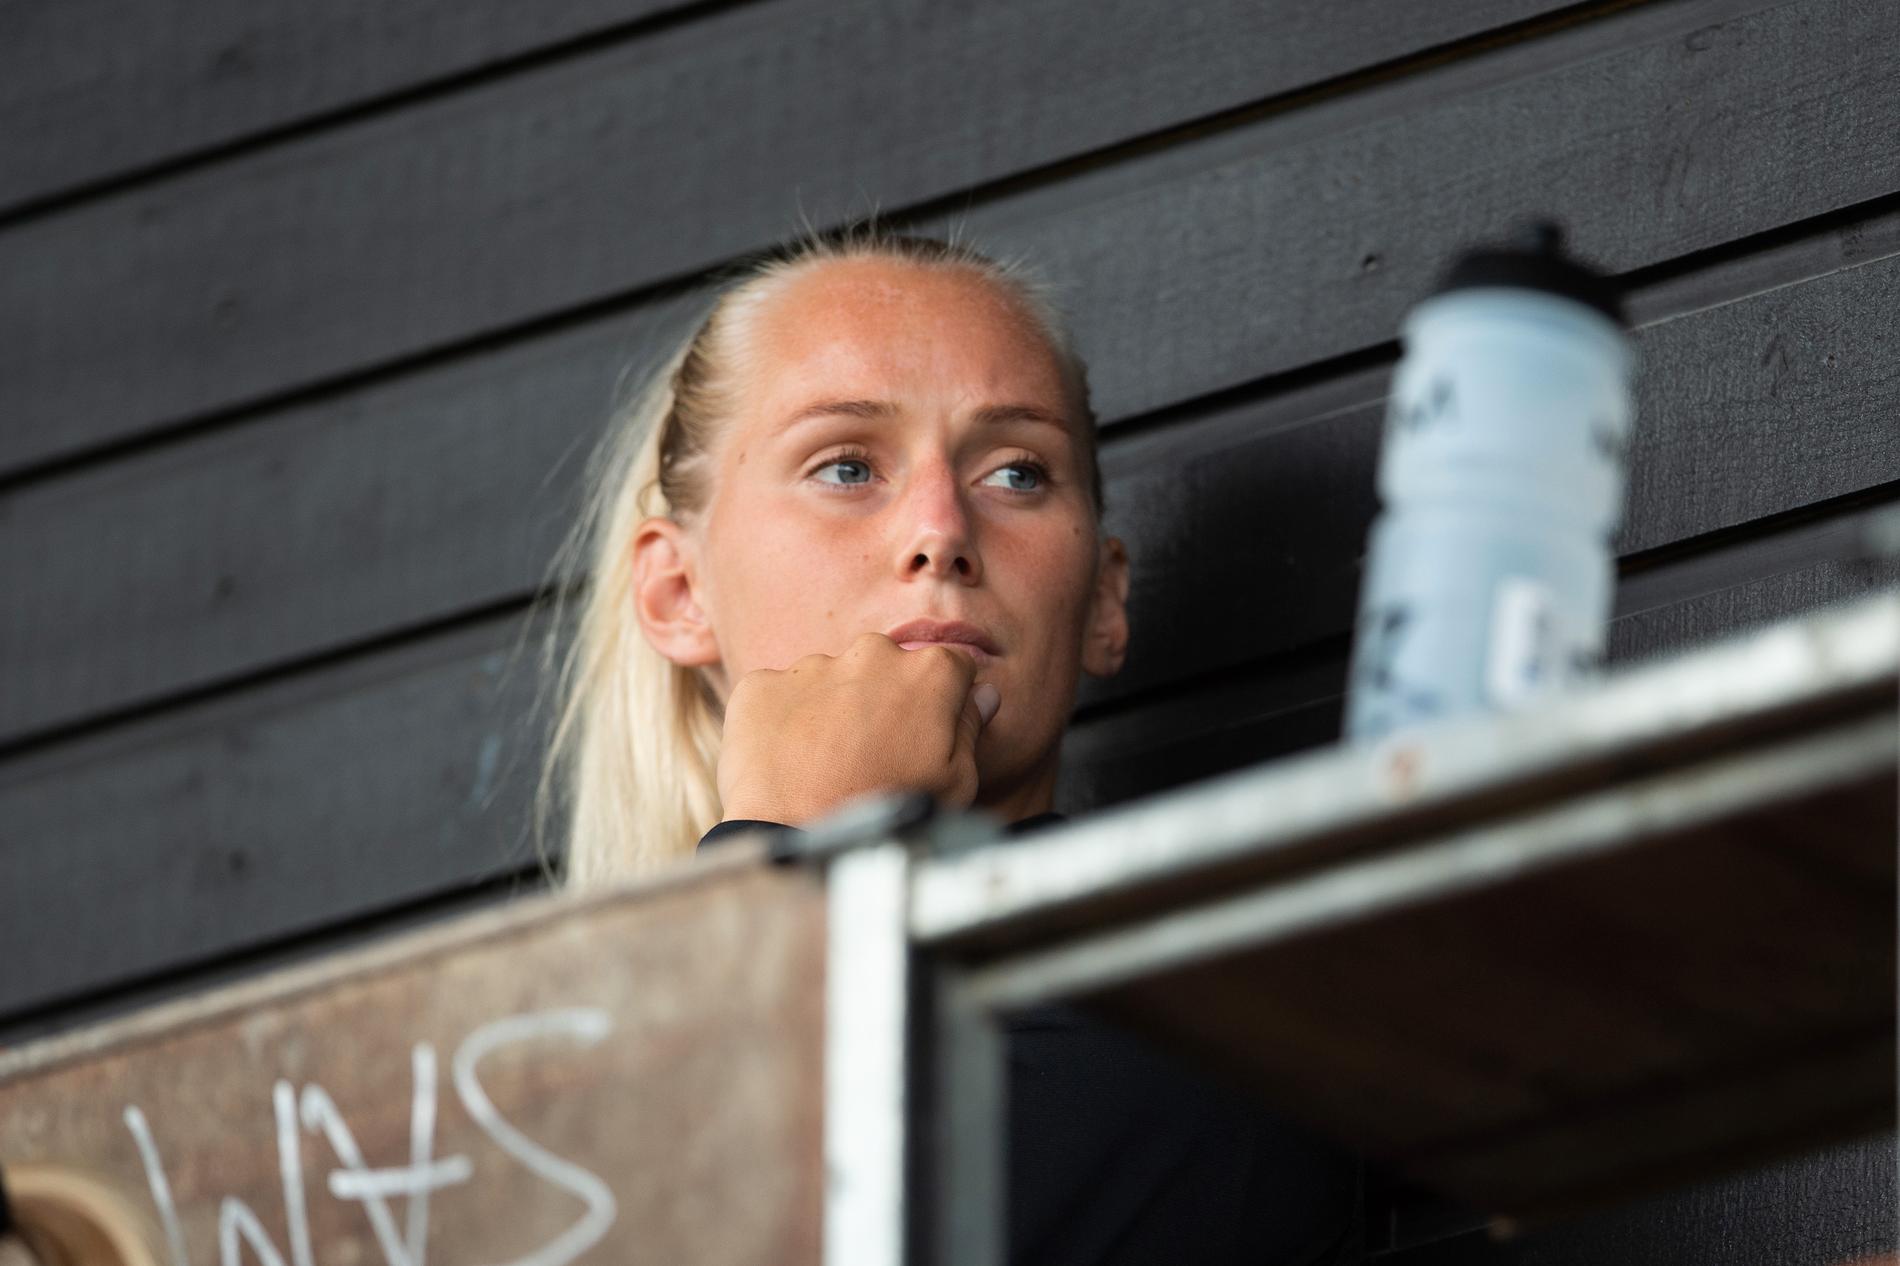 Stina Blackstenius lämnade Linköping för Göteborg under uppmärksammade former